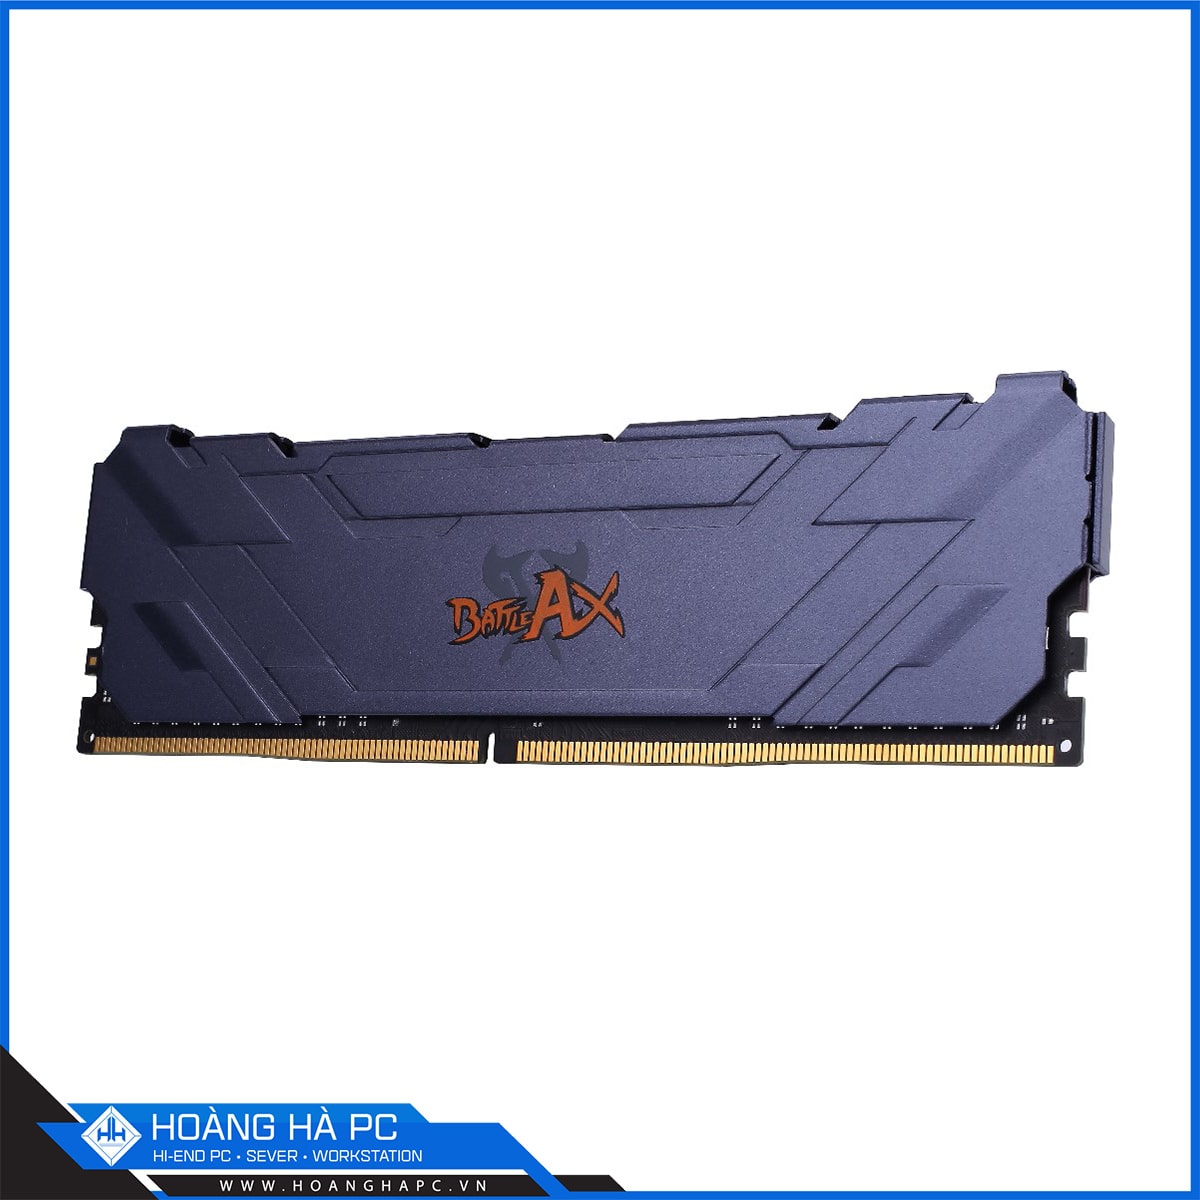 COLORFUL BATTLE AX 32GB BUS 3000 DDR4 (2 x 16GB)